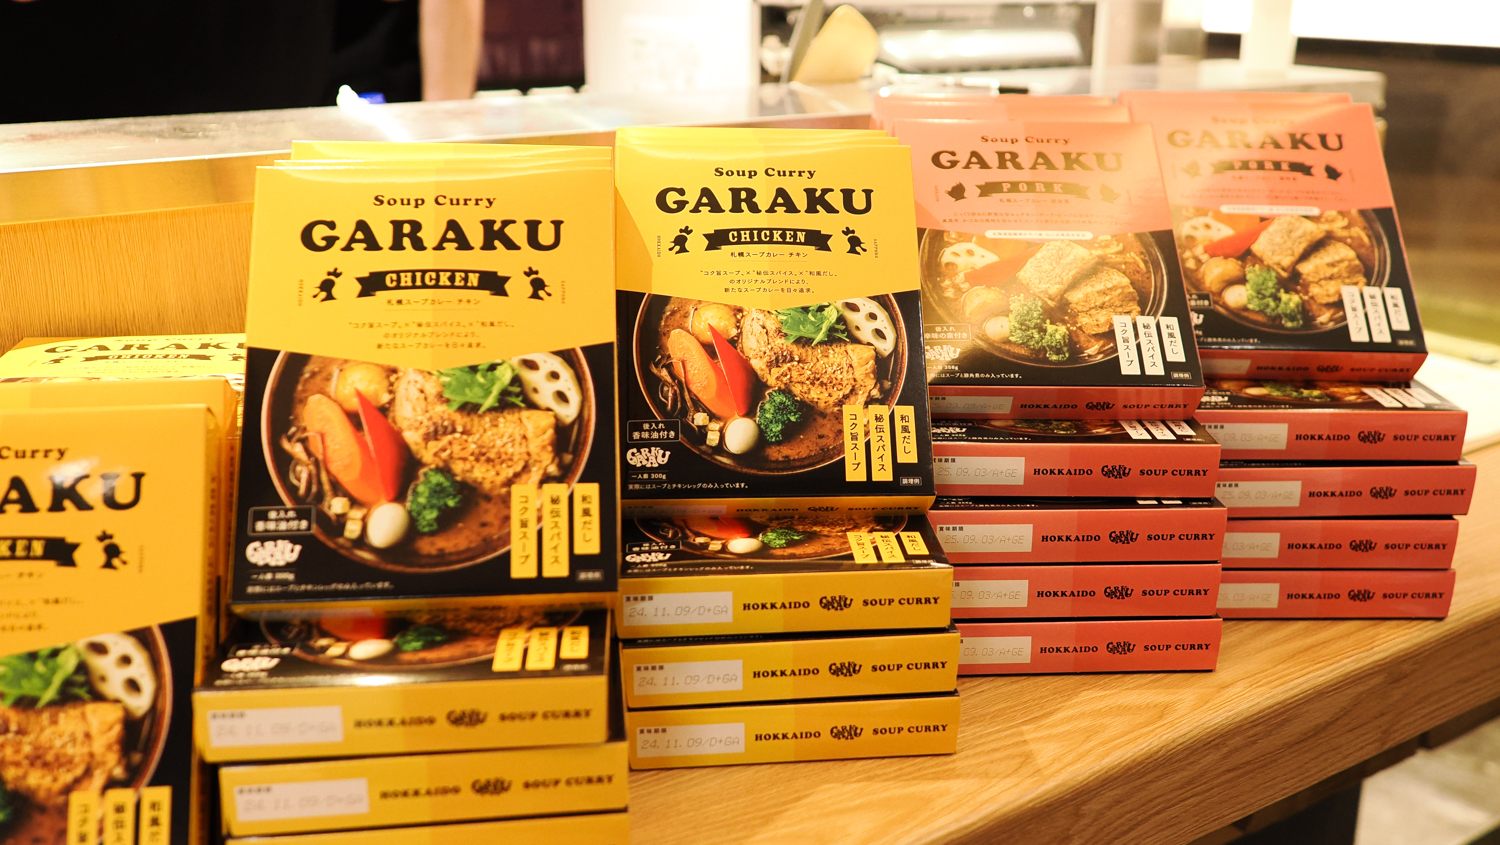 Ready-to-eat GARAKU Soup Curry as souvenirs